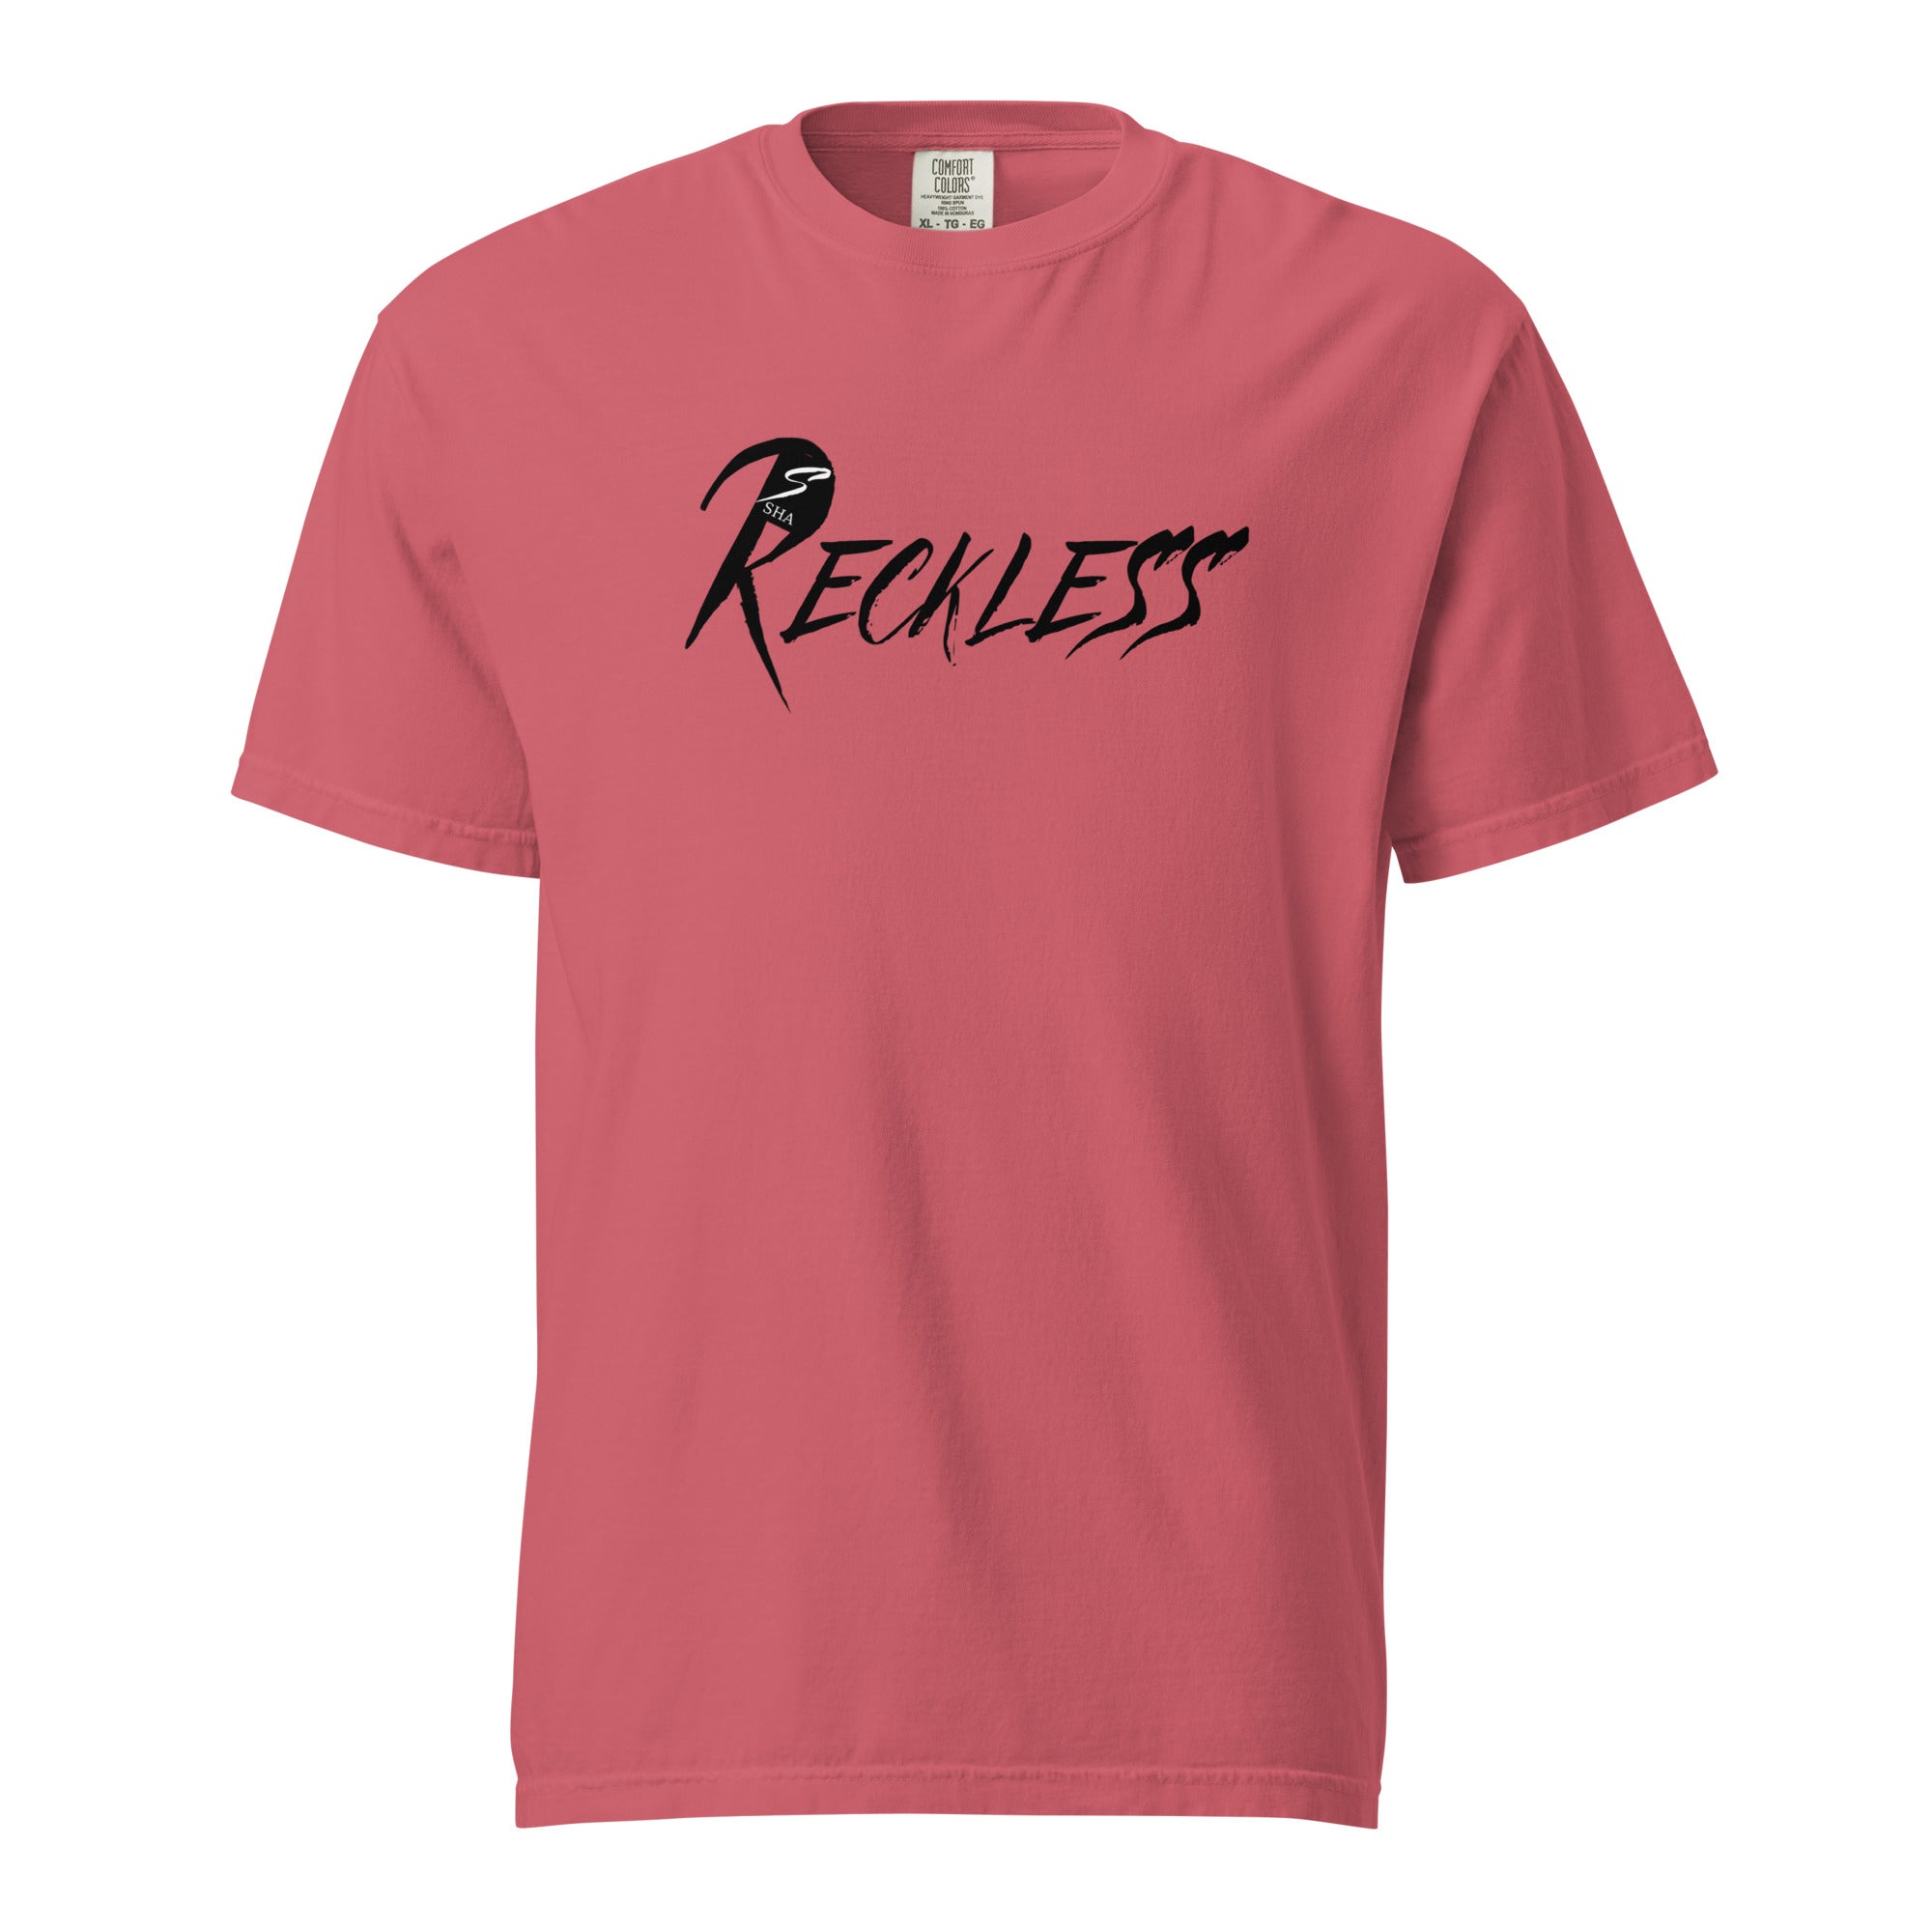 Reckless- Men's garment-dyed heavyweight t-shirt